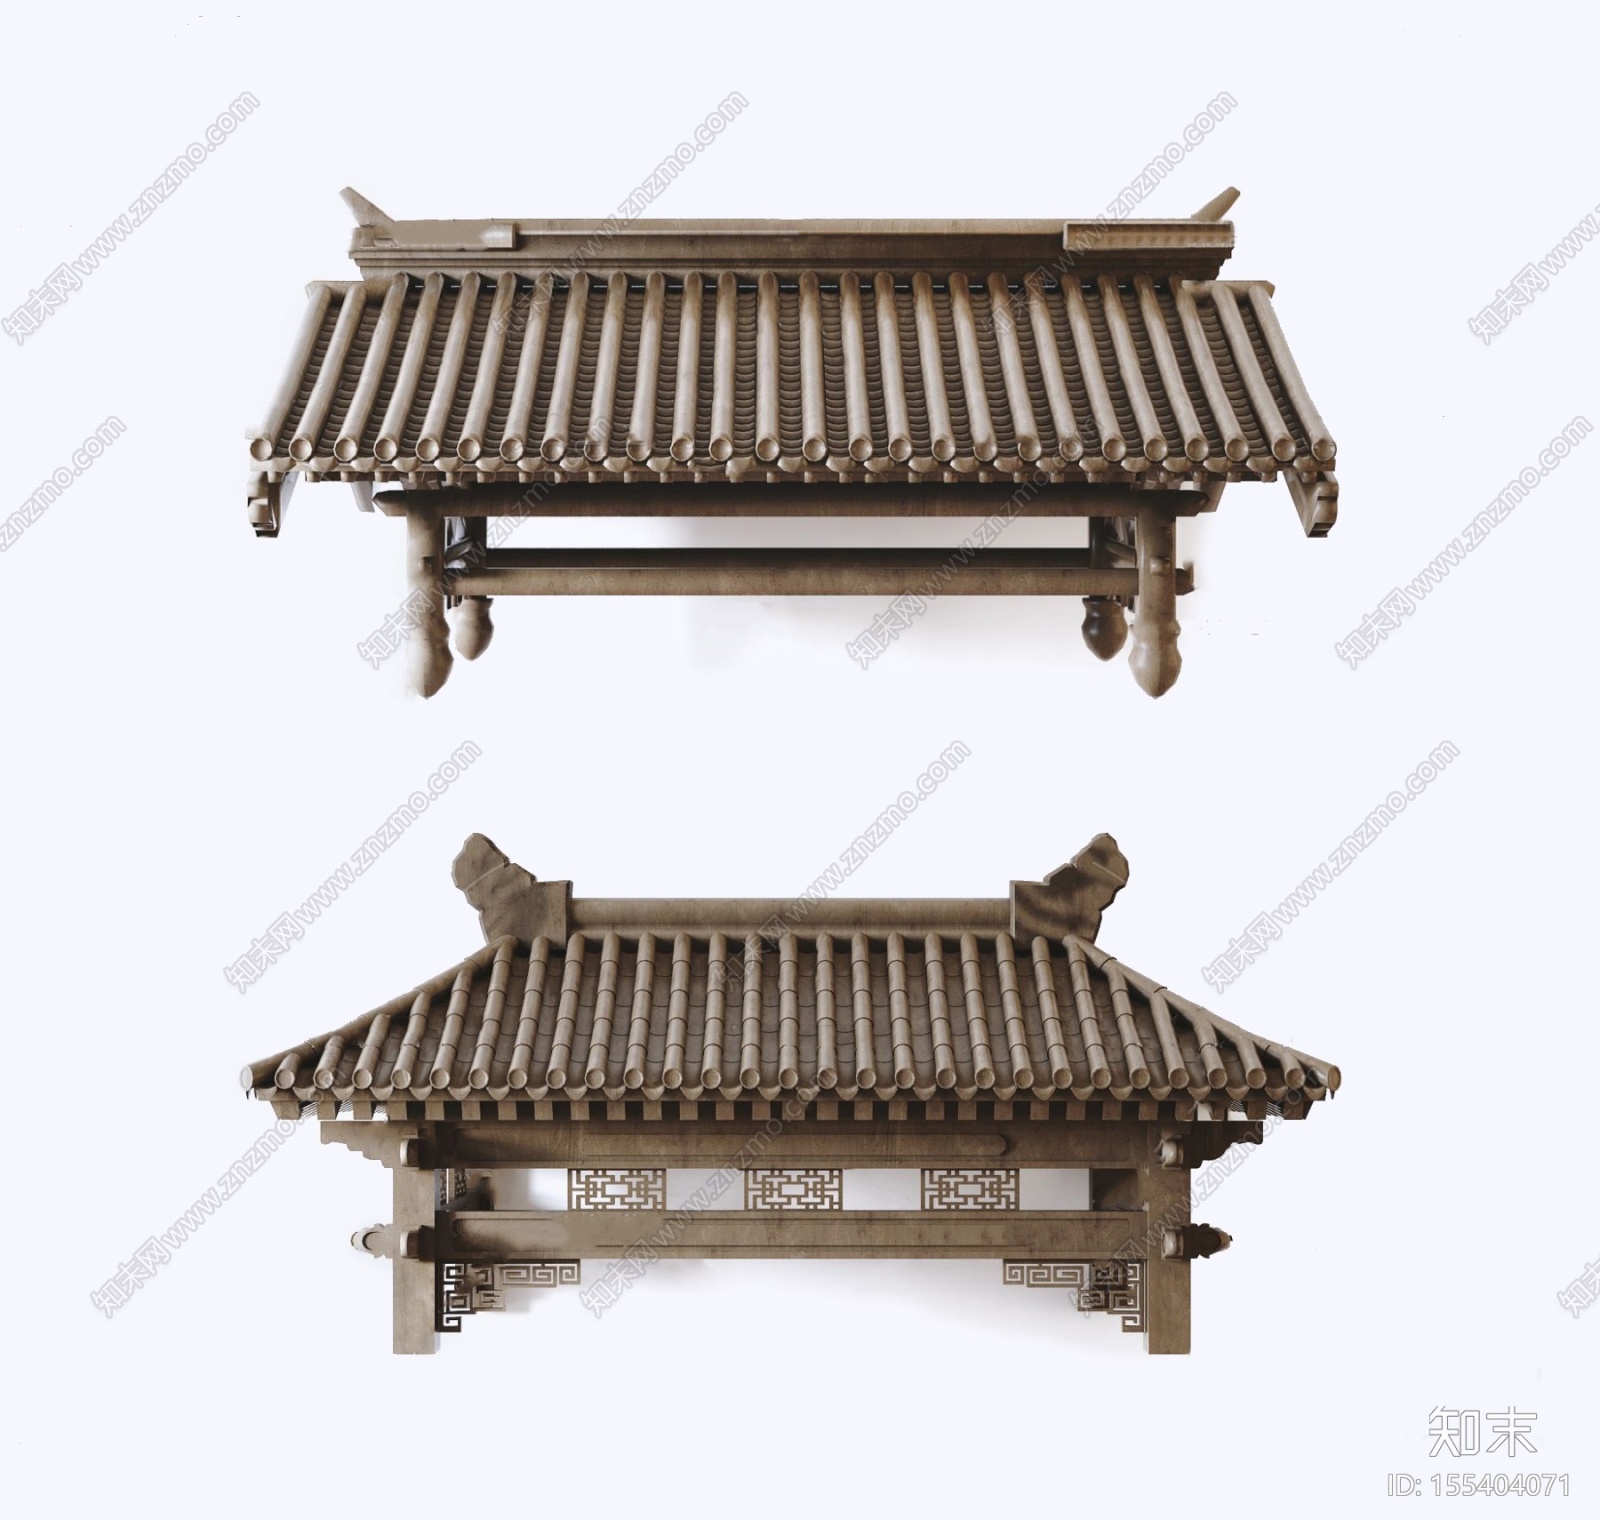 新中式古建筑屋檐门头构件3d模型3d模型下载【id:155404071】